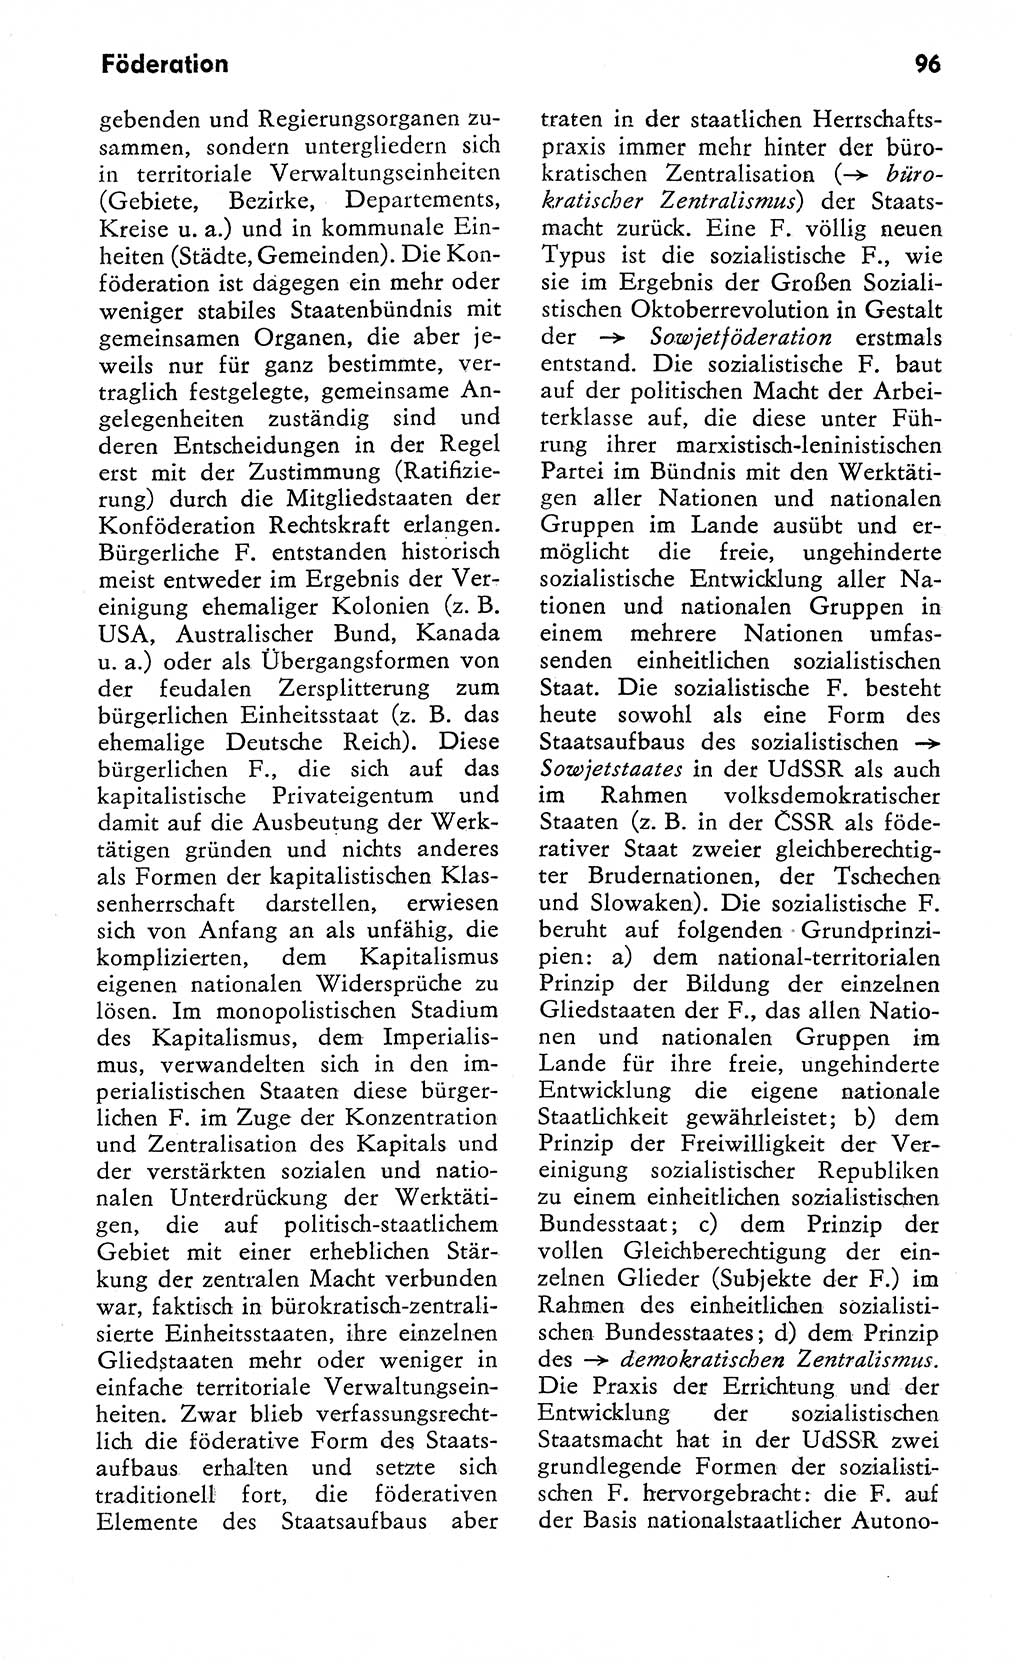 Wörterbuch zum sozialistischen Staat [Deutsche Demokratische Republik (DDR)] 1974, Seite 96 (Wb. soz. St. DDR 1974, S. 96)